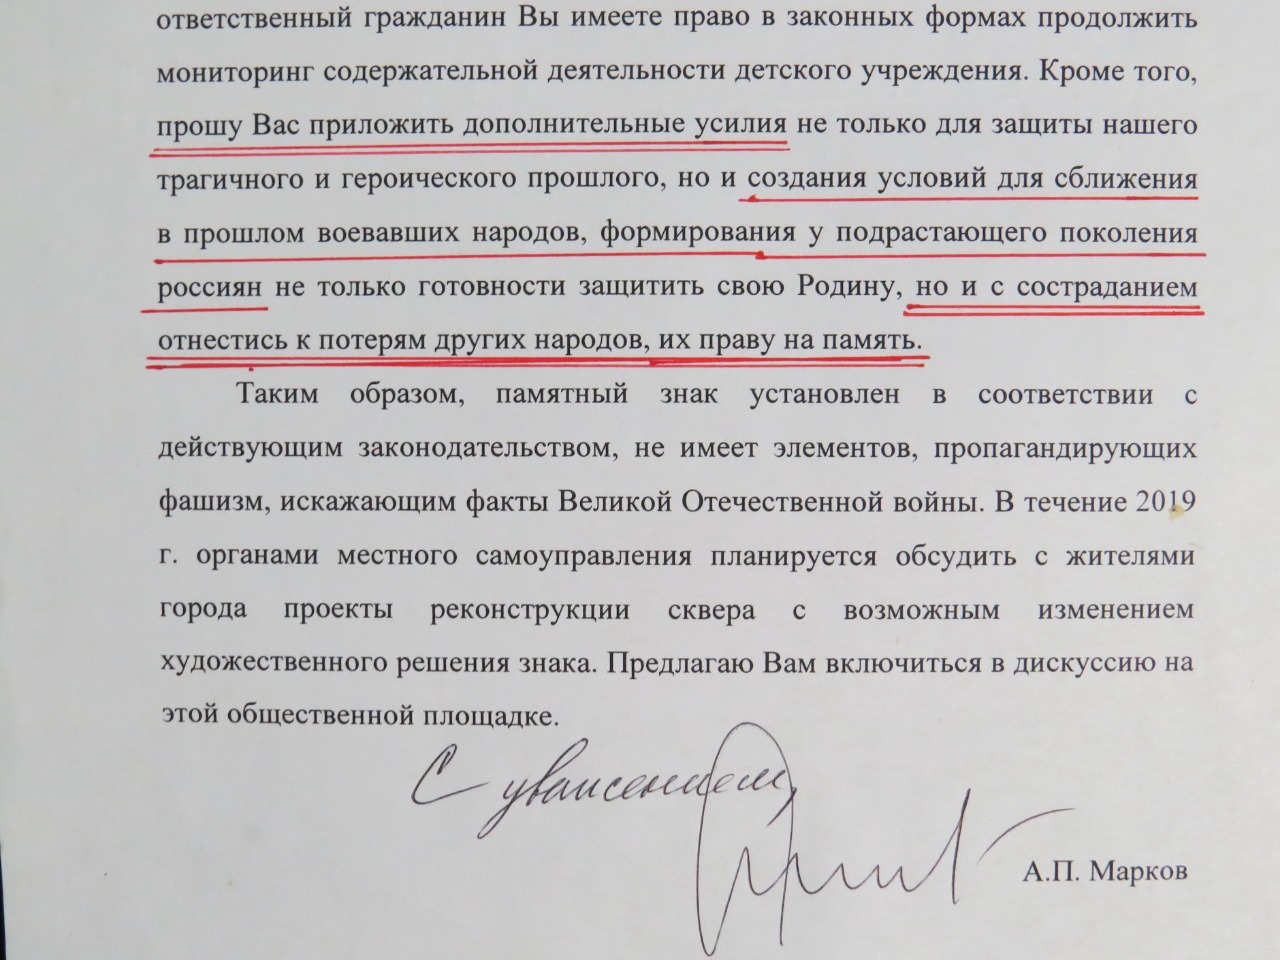 Фрагмент ответа депутата ГД РФ Андрея Маркова на вопрос жителя Россоши о памятнике 